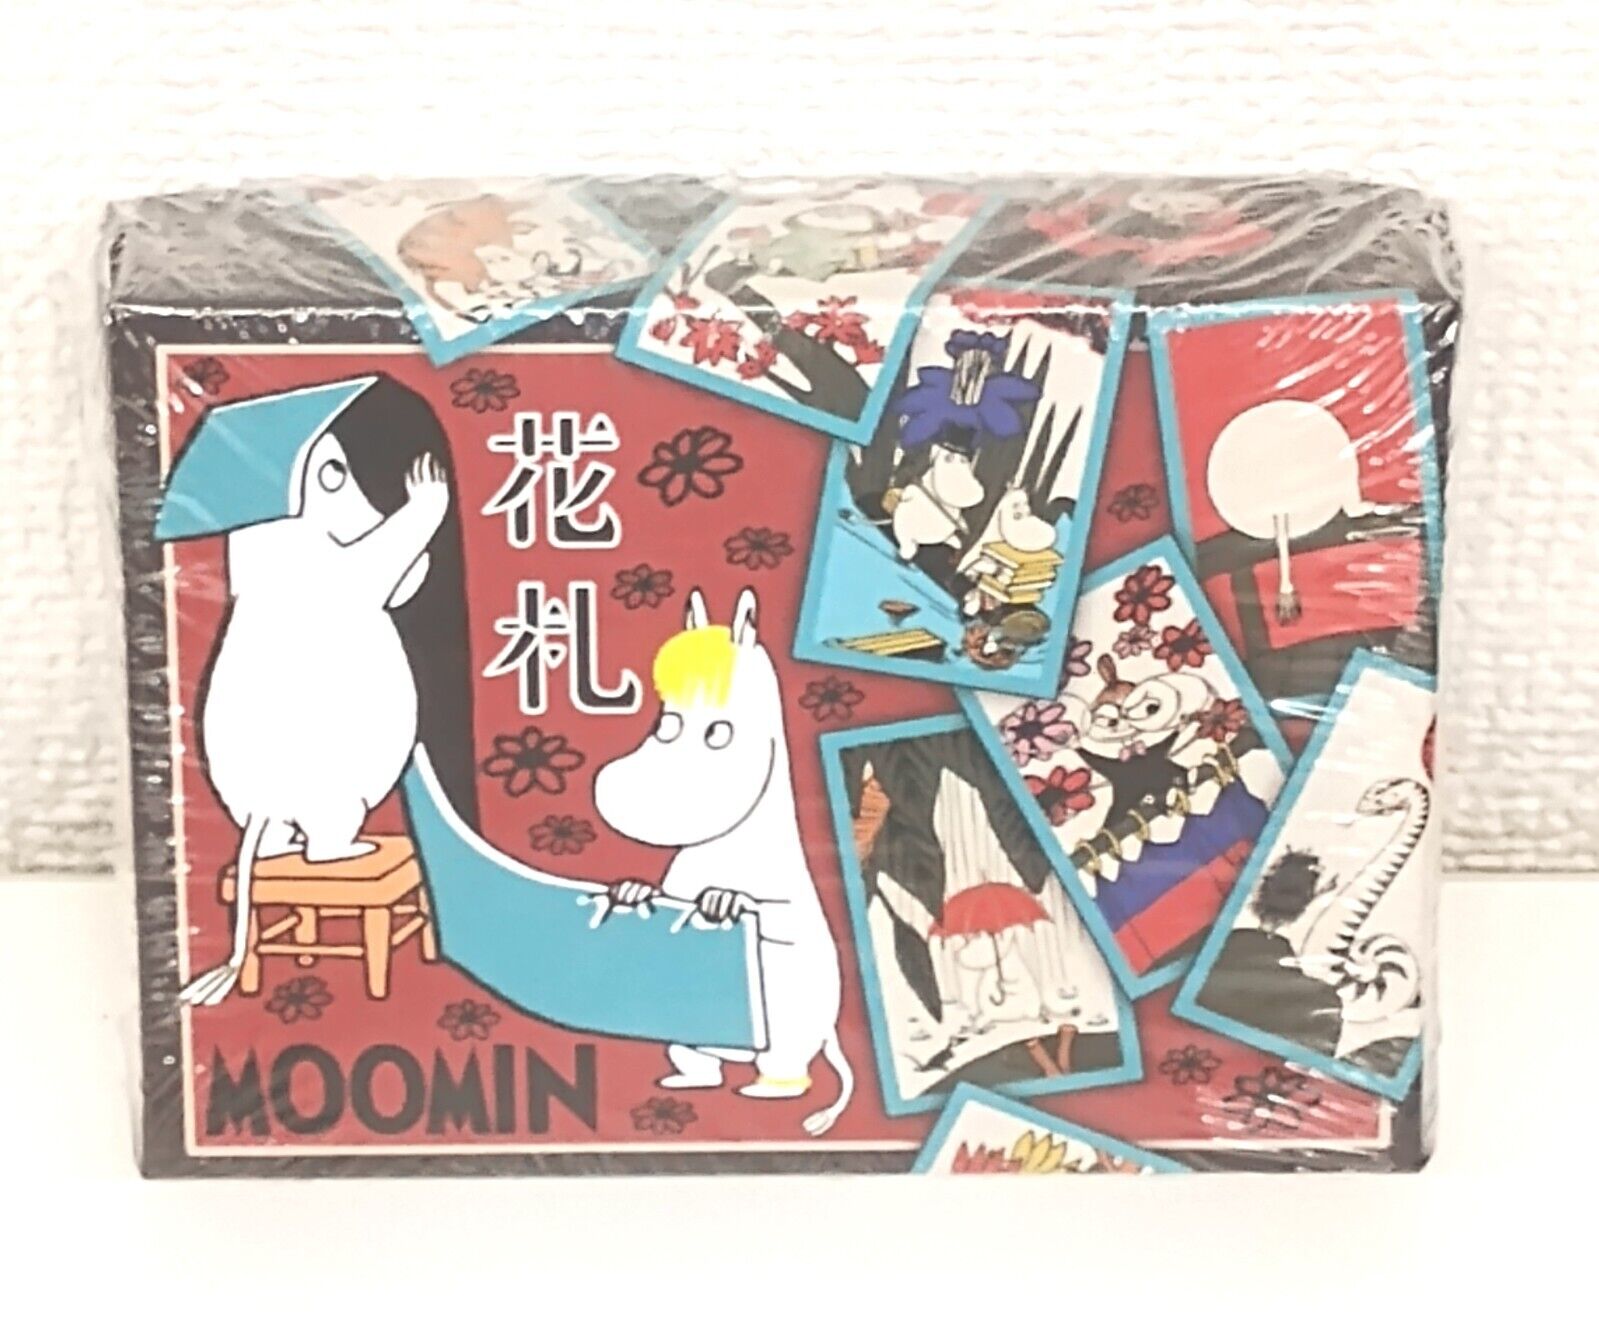 MOOMIN Hanafuda Japanese playing cards Ensky Japan Limited New Japanese